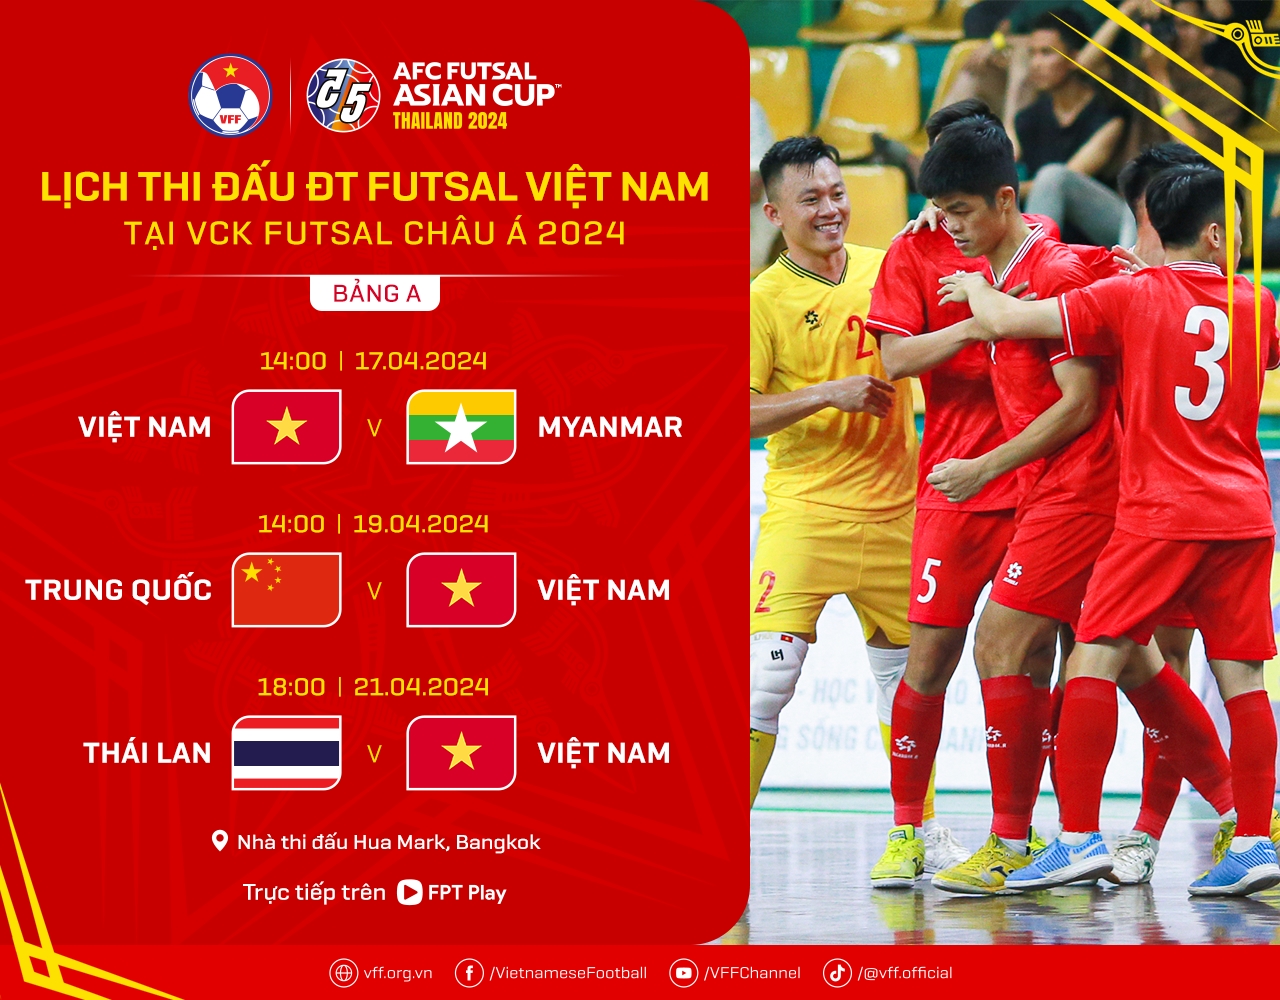 Vừa tới Thái Lan, ĐT futsal Việt Nam lao ngay vào tập luyện - ảnh 2